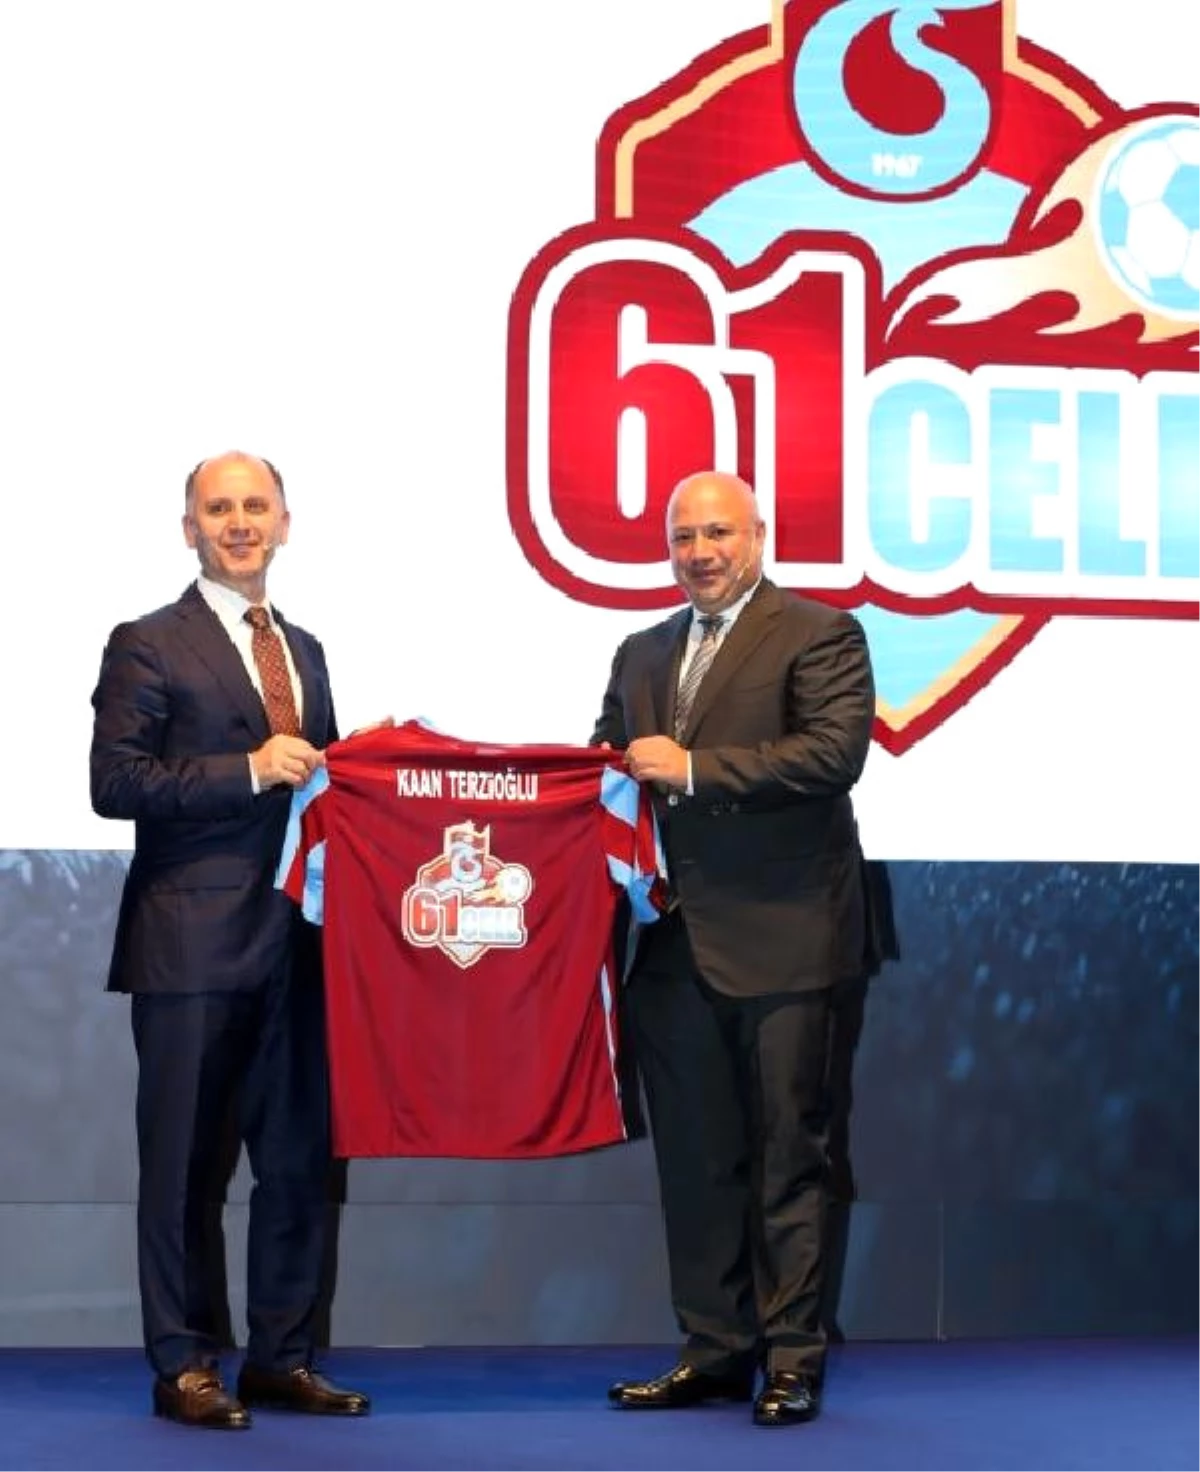 Trabzonspor Kulüp Başkanı Usta: "Trabzonspor Taraftarları, 61cell ile Birlikte Gereken Desteği...